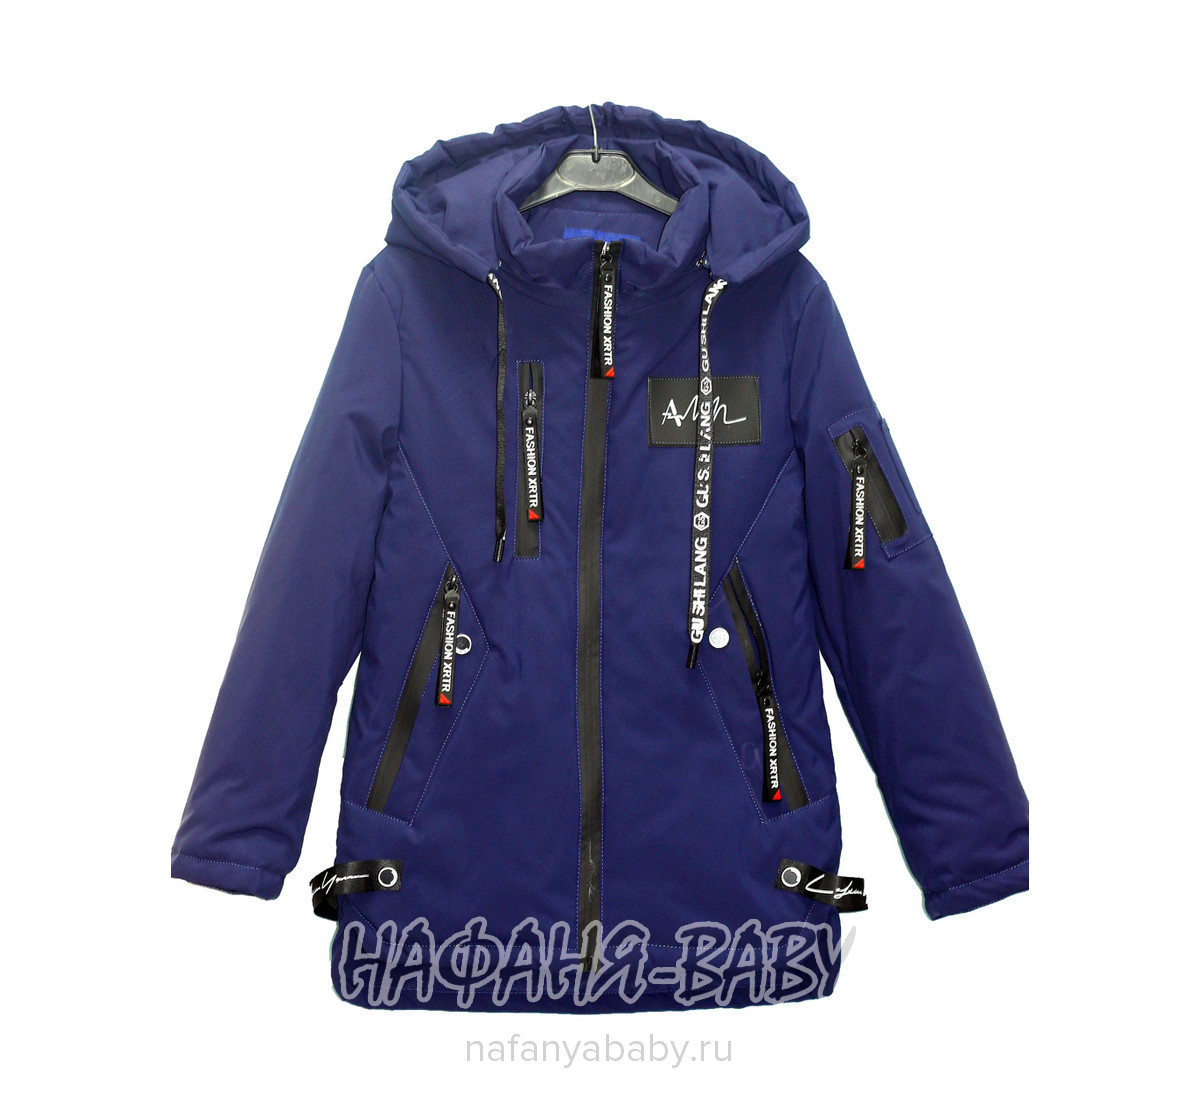 Детская куртка XRTR арт: 620, 10-15 лет, 5-9 лет, цвет синий, оптом Китай (Пекин)